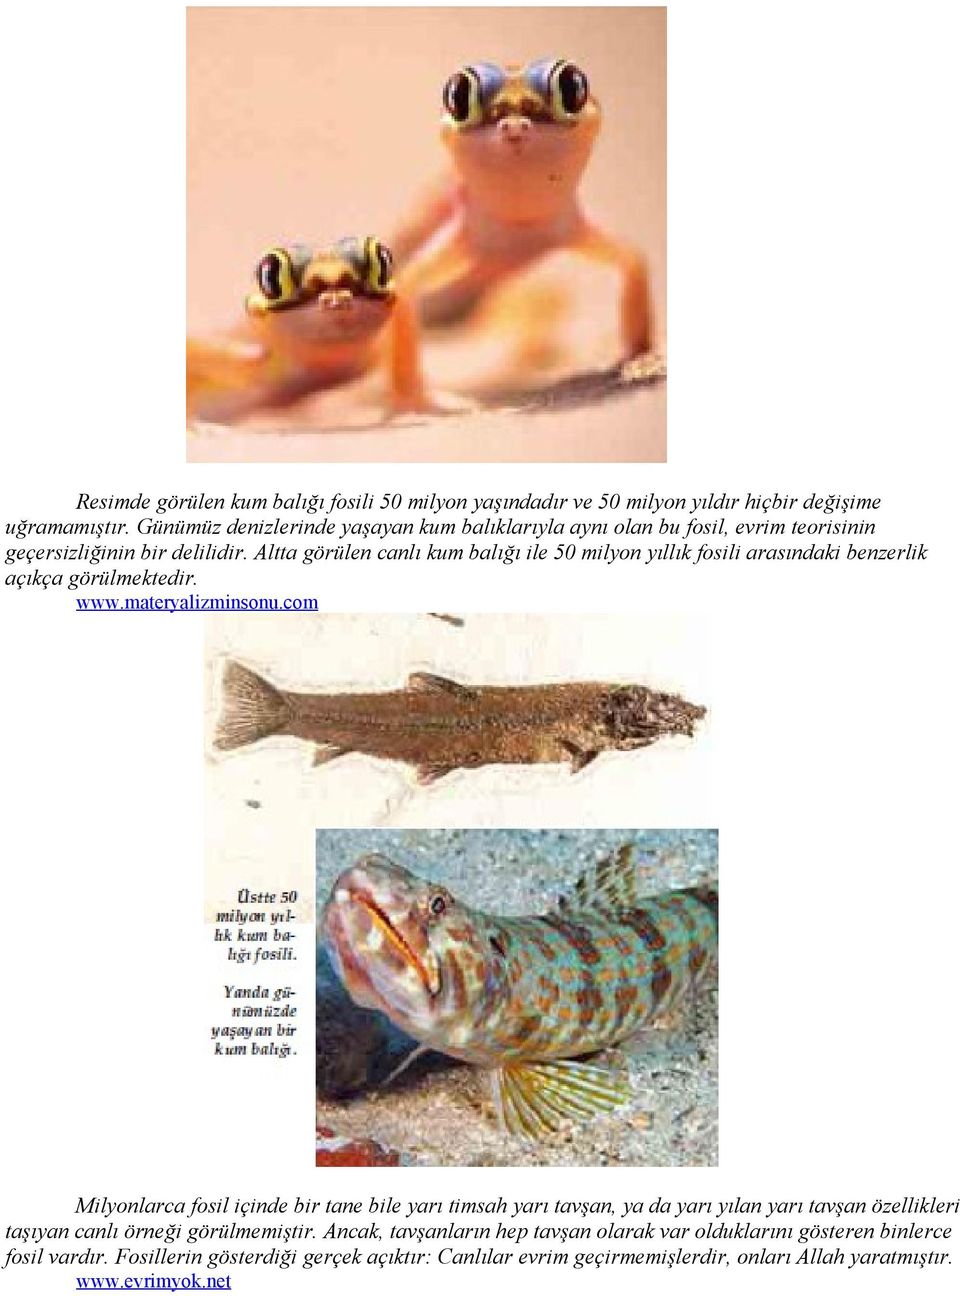 Altta görülen canlı kum balığı ile 50 milyon yıllık fosili arasındaki benzerlik açıkça görülmektedir. www.materyalizminsonu.